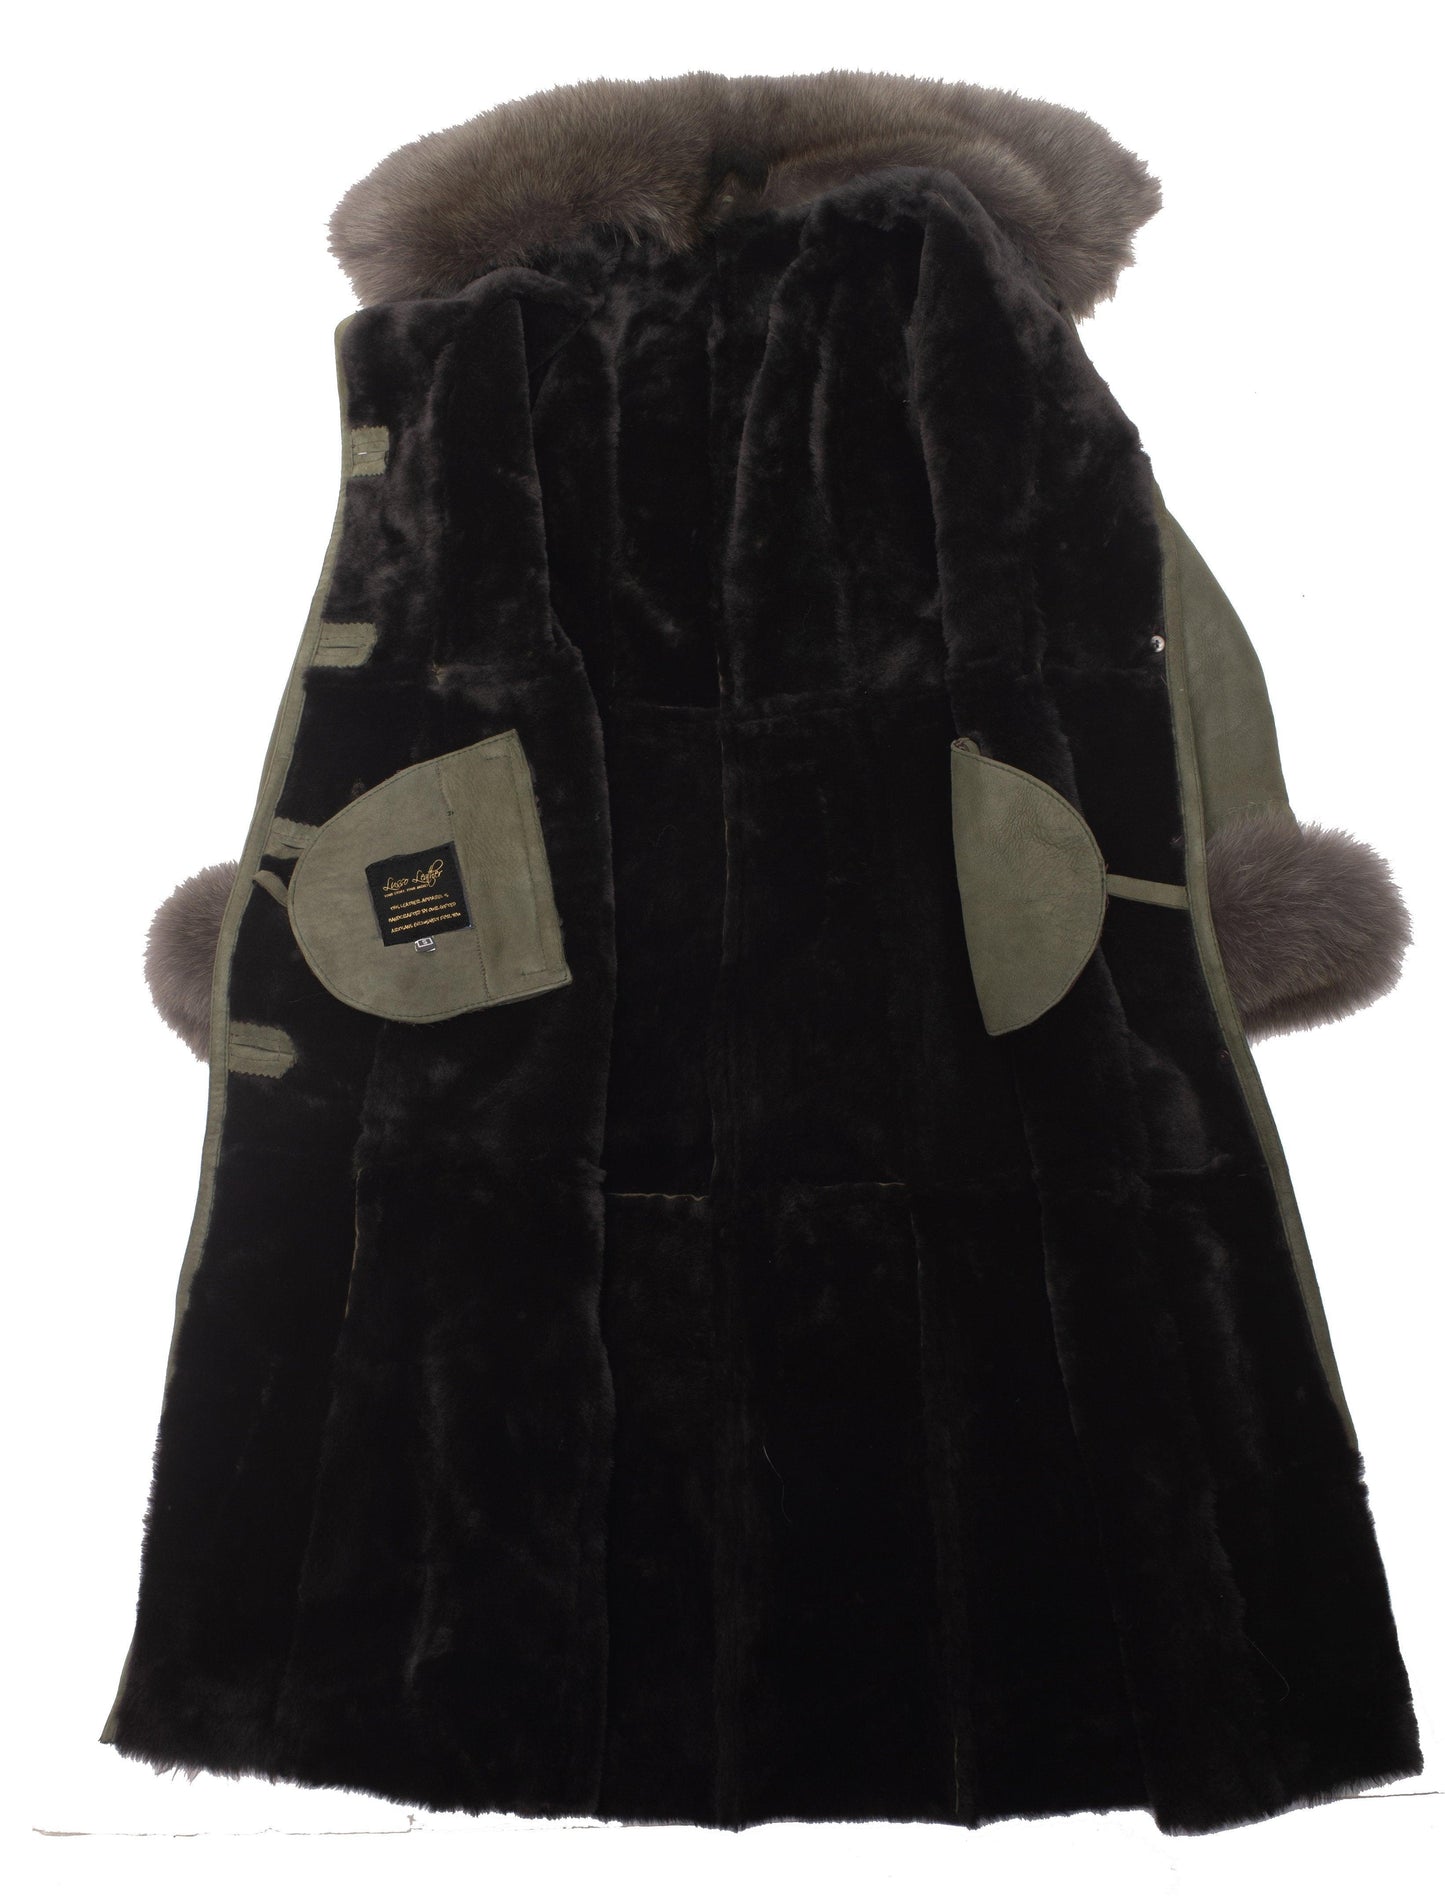 Caitlan's Shearling Sheepskin Long Coat with Fox Fur Trim